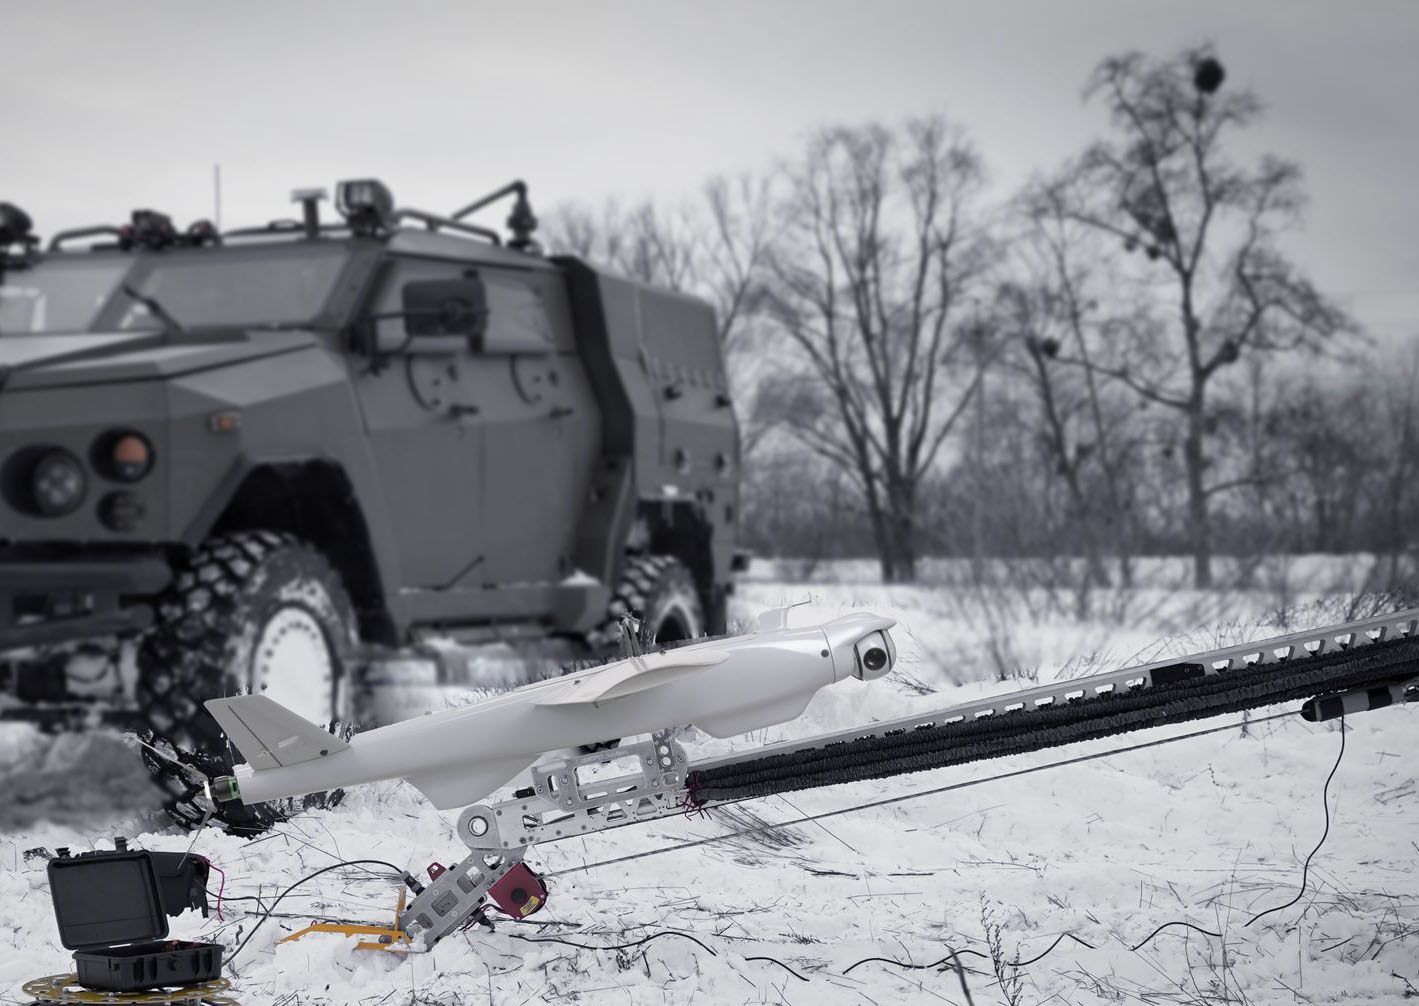 Уничтожение двух российских ЗРК "Тор" украинскими дронами-камикадзе RAM II попало на видео